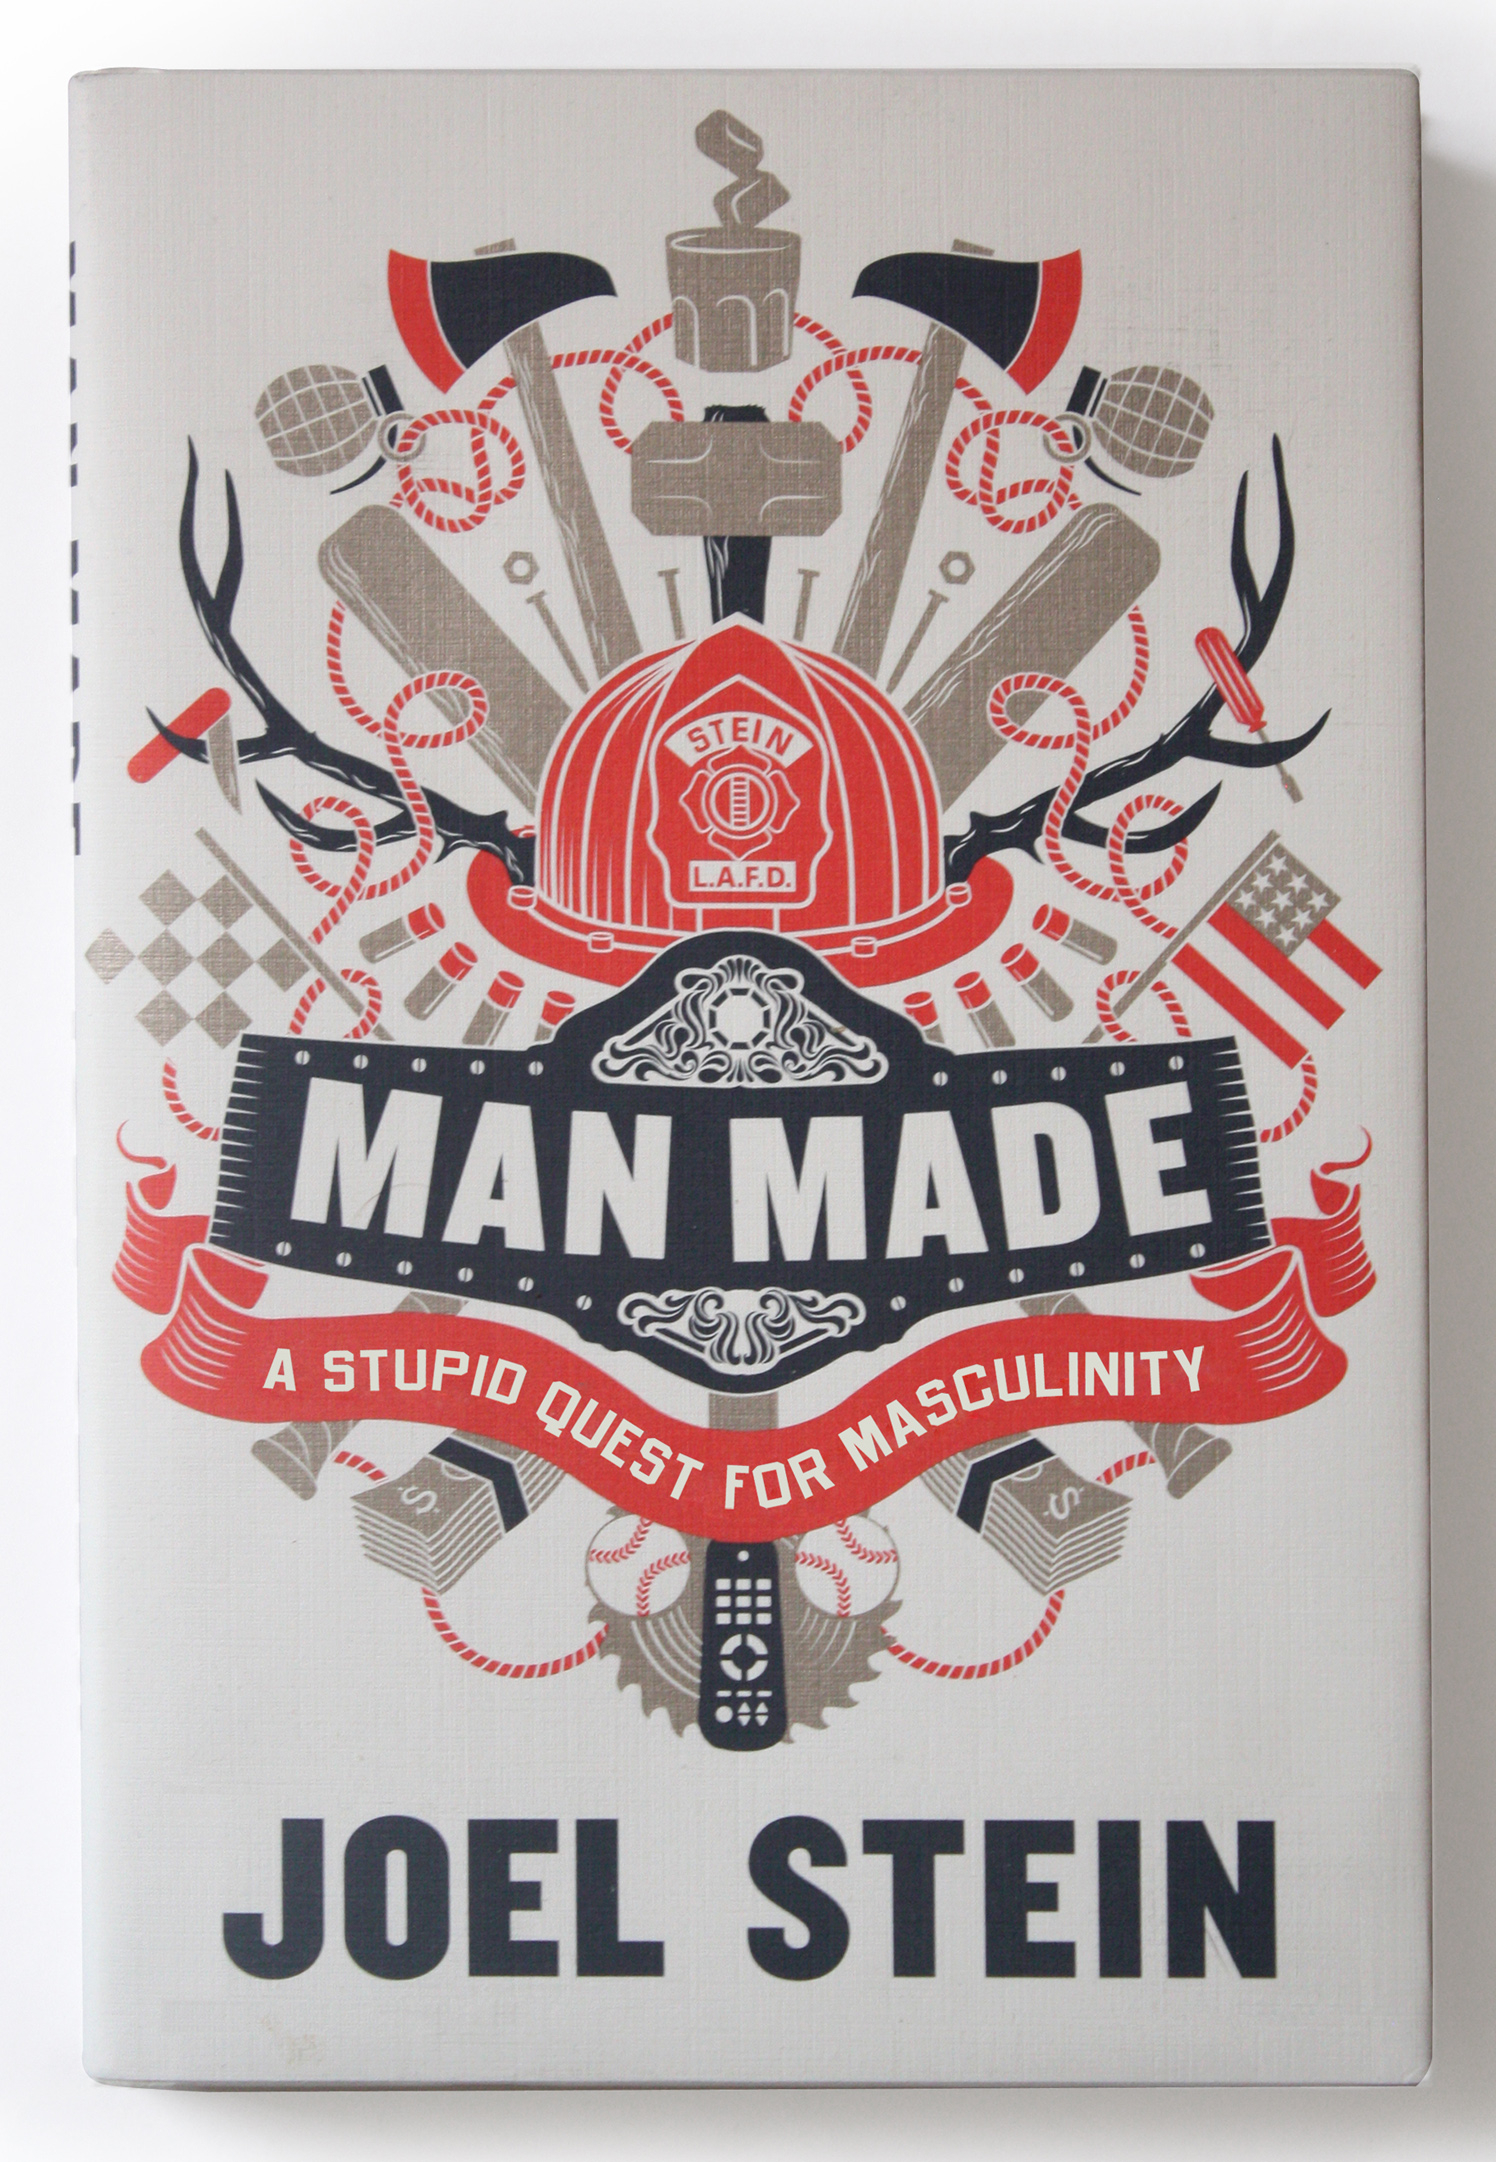 Man Made / Joel Stein